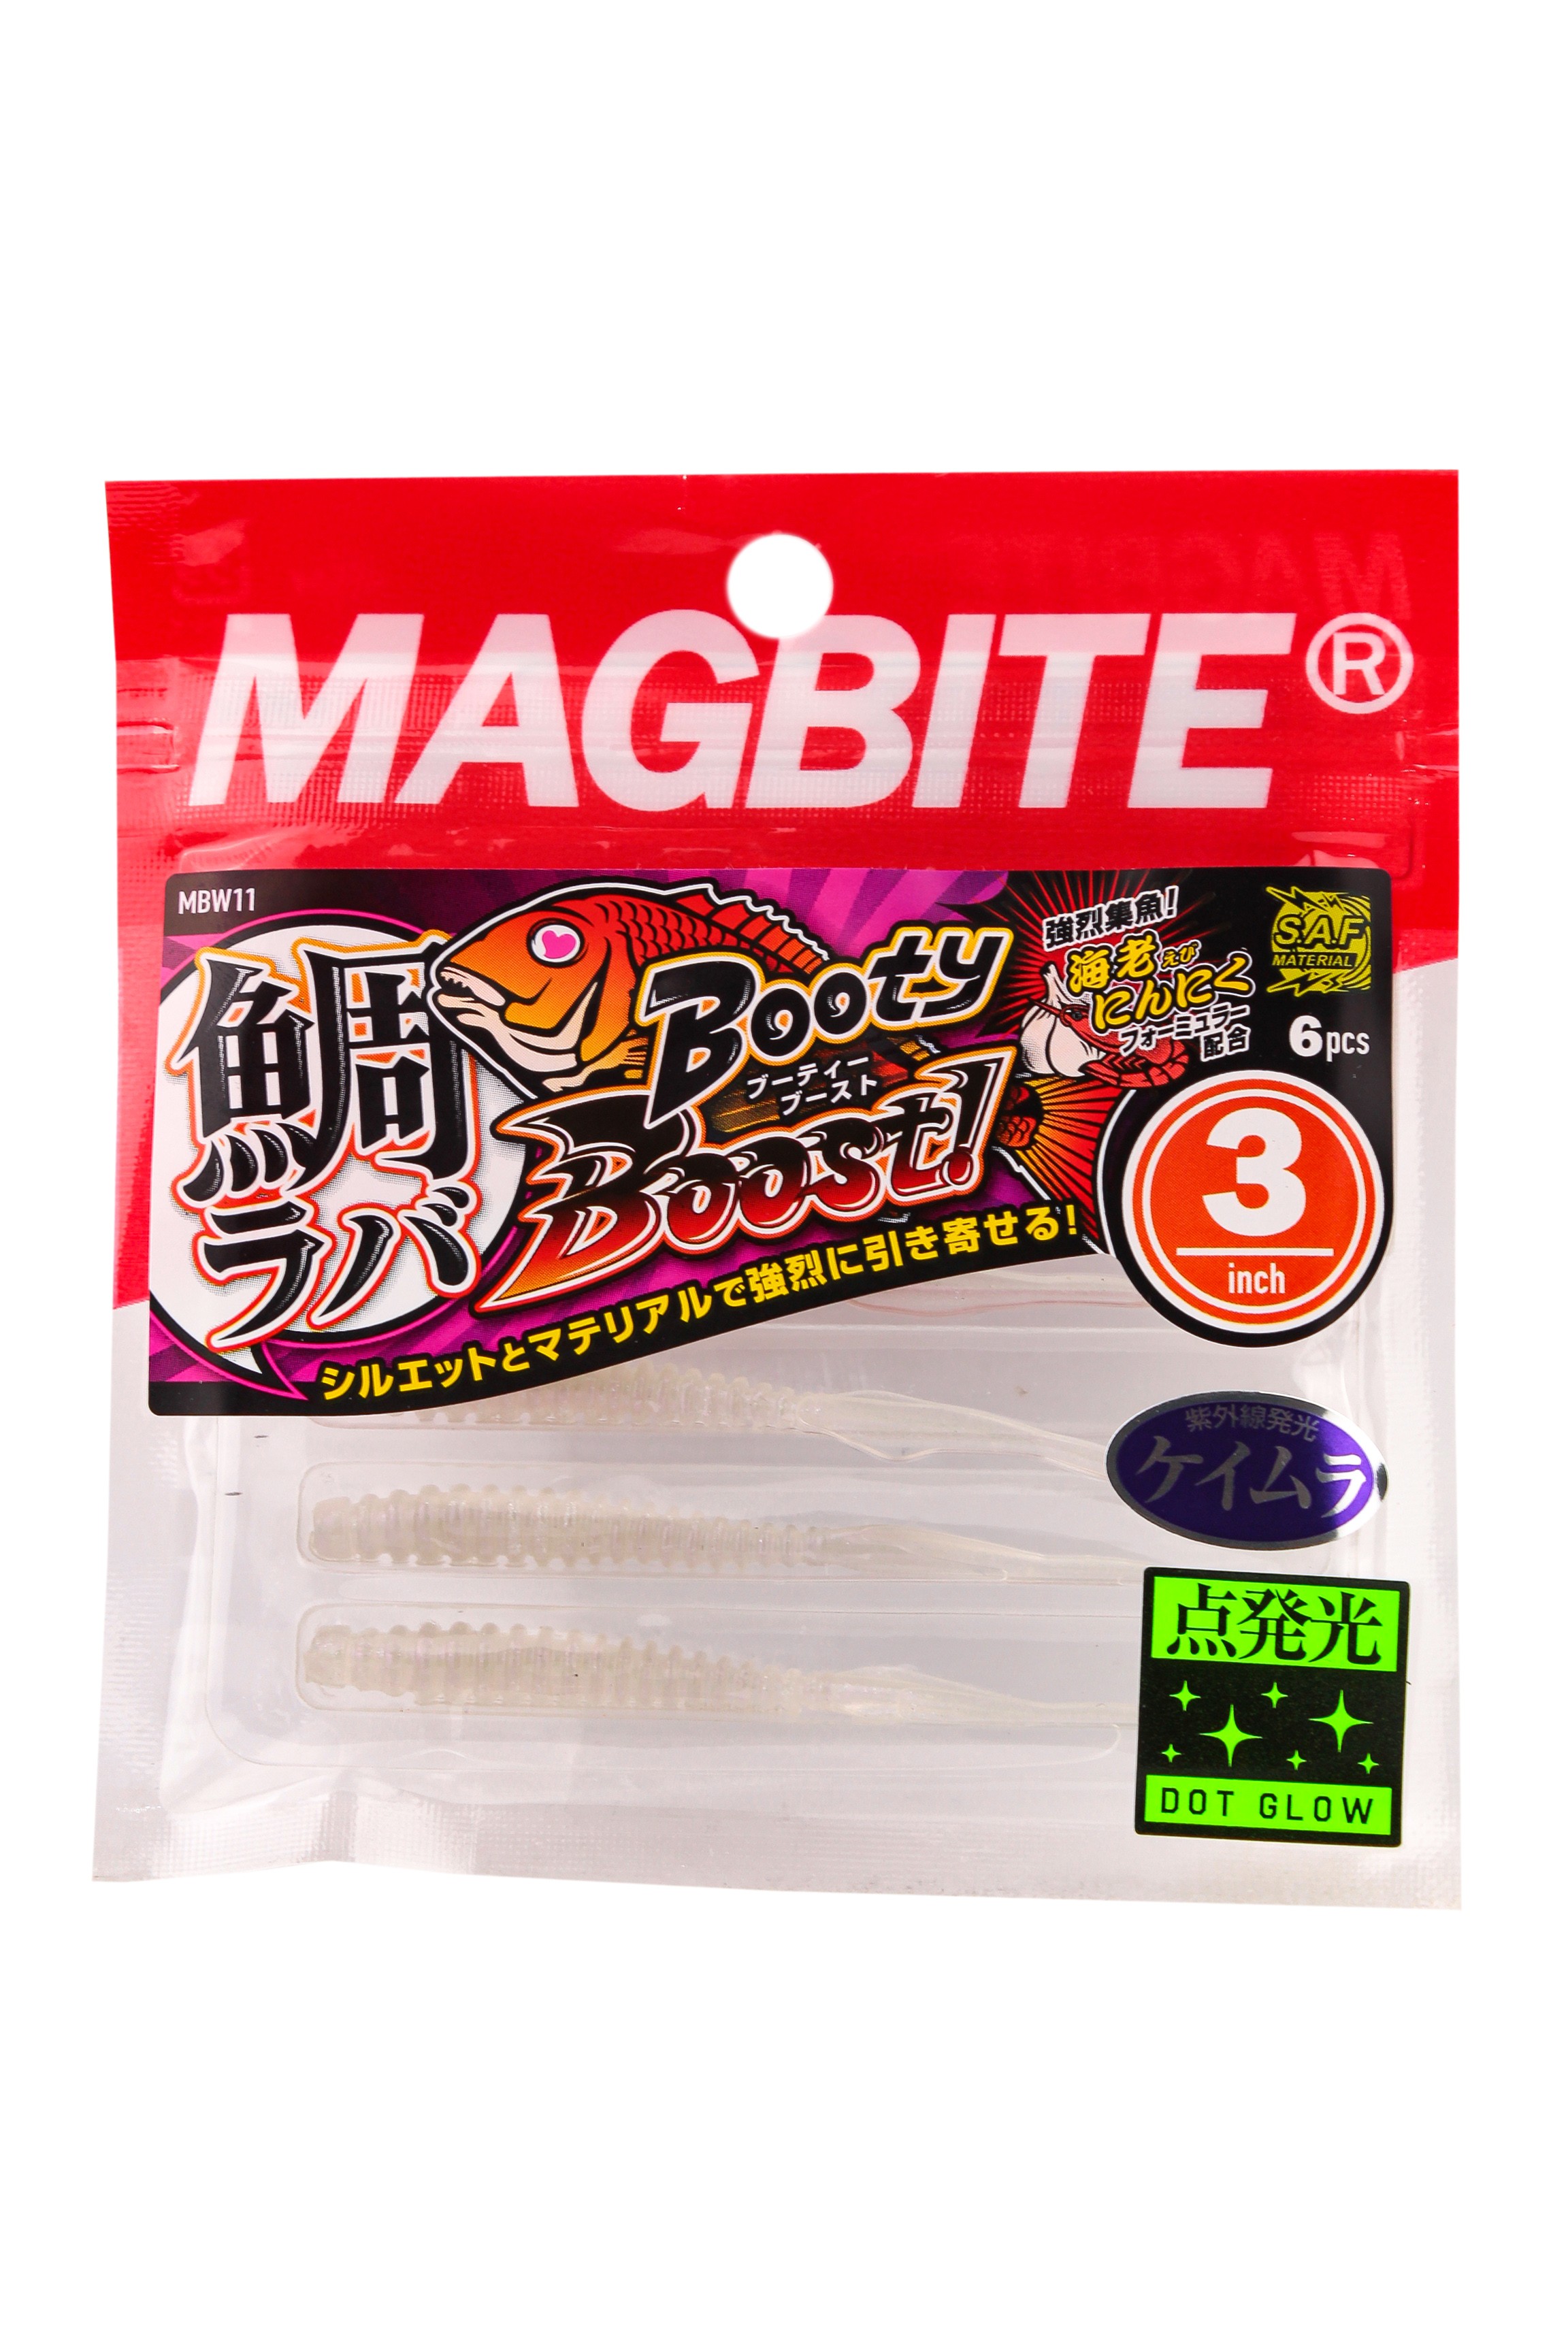 Приманка Magbite MBW11 Tairaba Booty Boost 3,0" цв.31 - фото 1